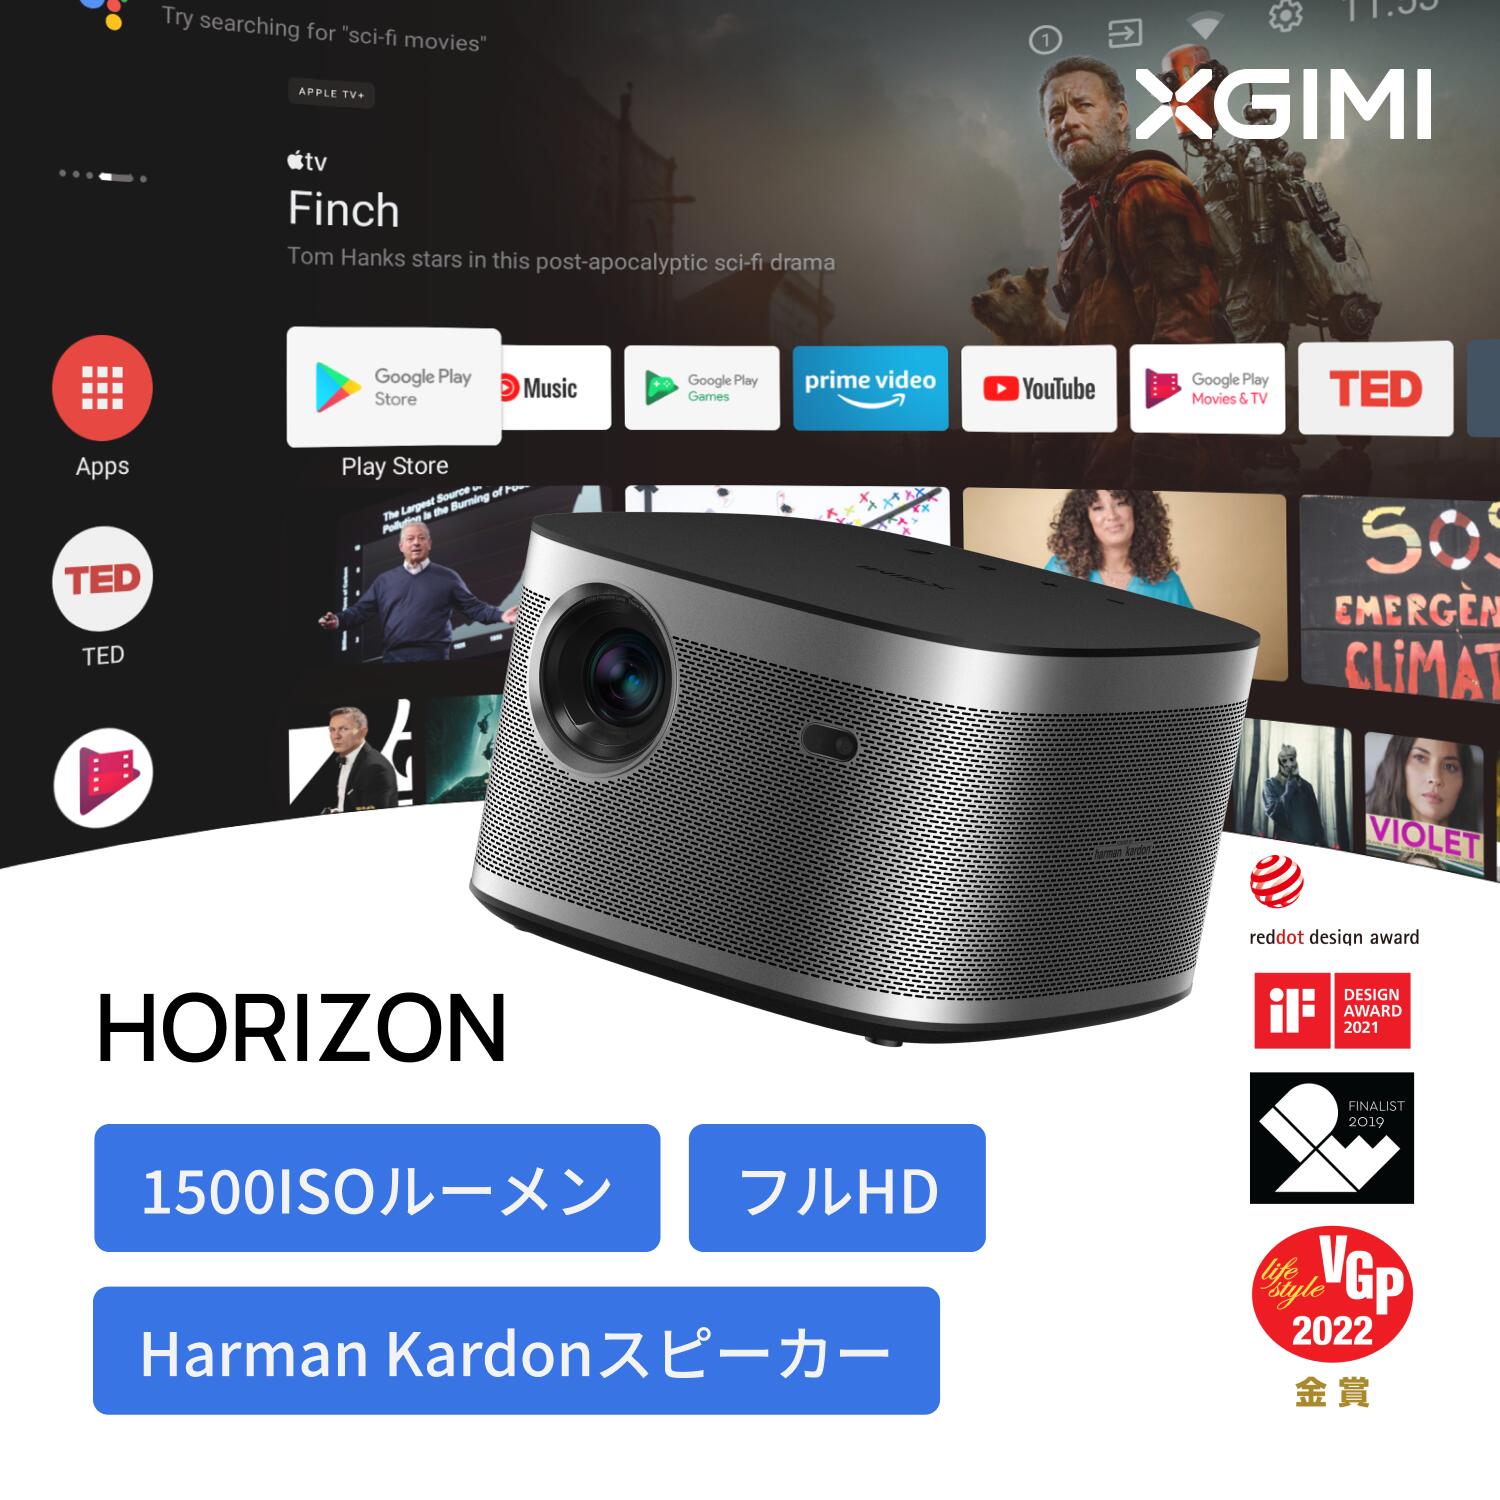 XGIMI HORIZON 高輝度 ホームプロジェクター フルHD 1080p 家庭用 Android TV 10.0搭載 ネイティブ解像度 